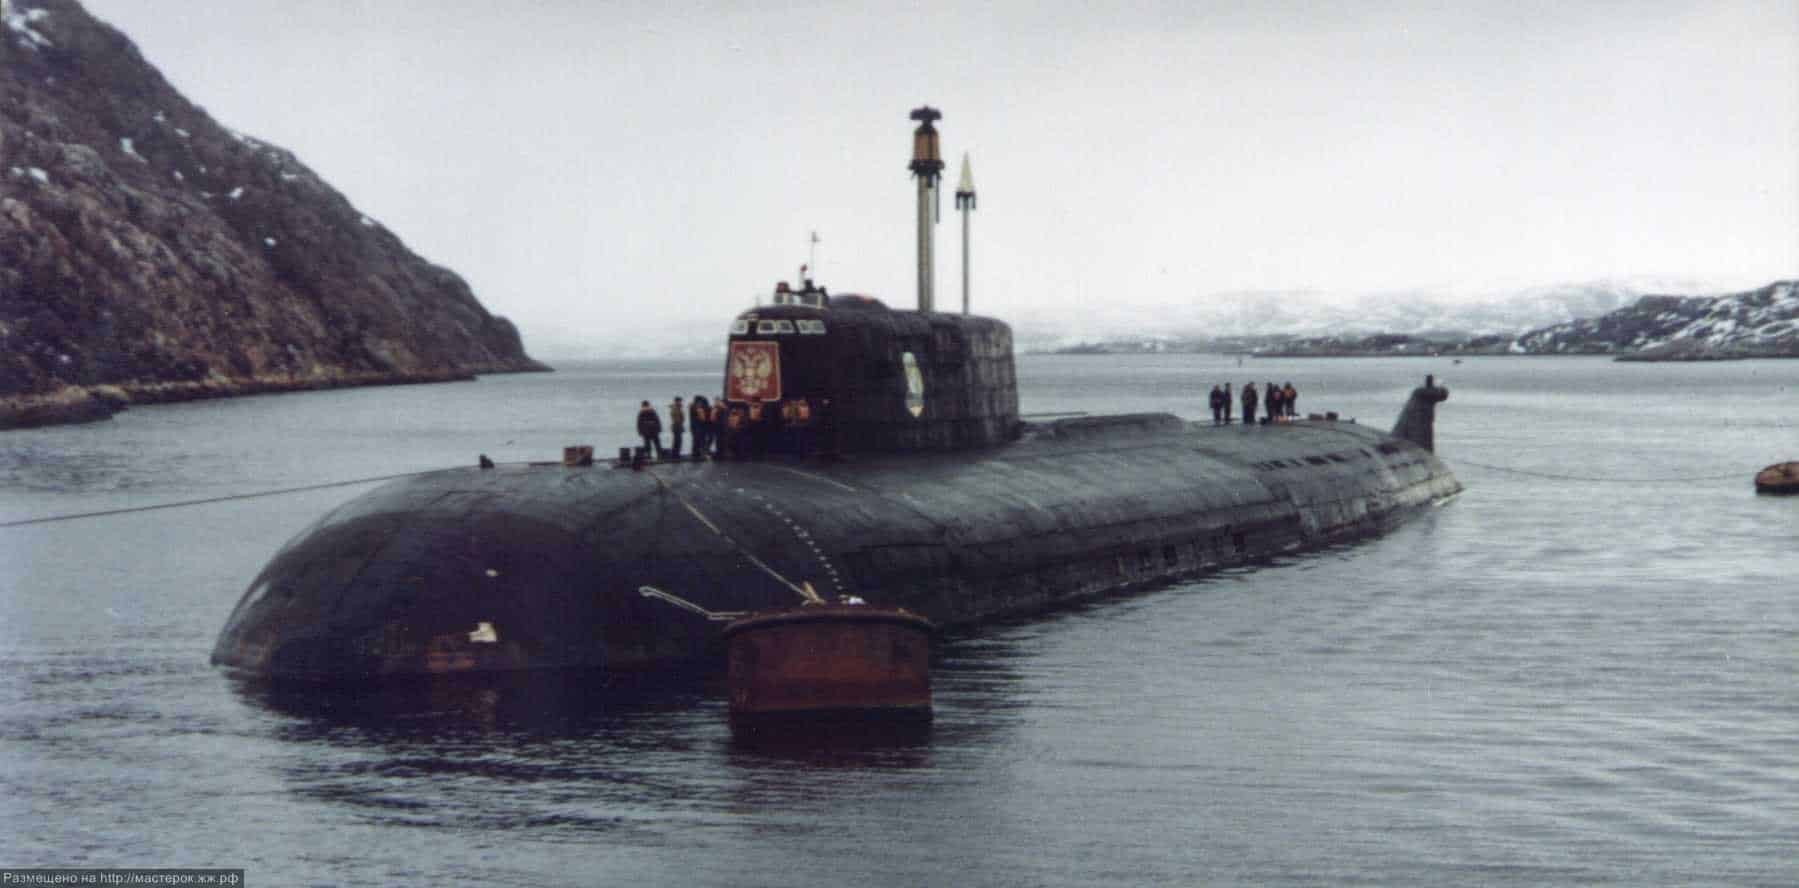 Причины гибели подводной лодки Курск: что происходило на судне после трагедии, как проходила спасательная операция